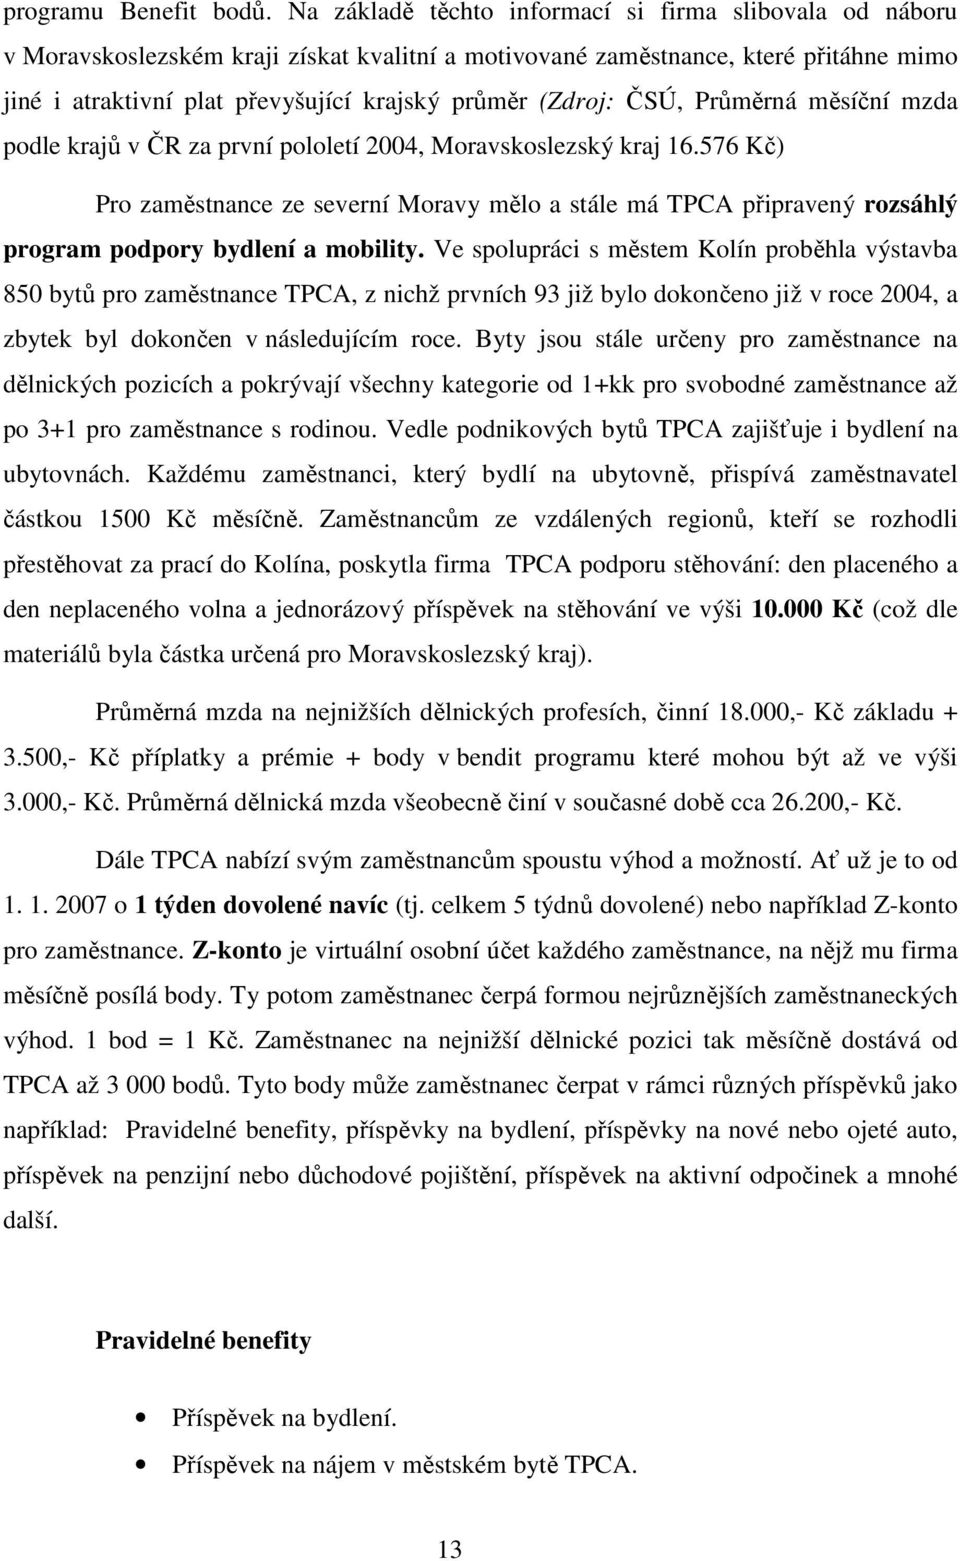 (Zdroj: ČSÚ, Průměrná měsíční mzda podle krajů v ČR za první pololetí 2004, Moravskoslezský kraj 16.